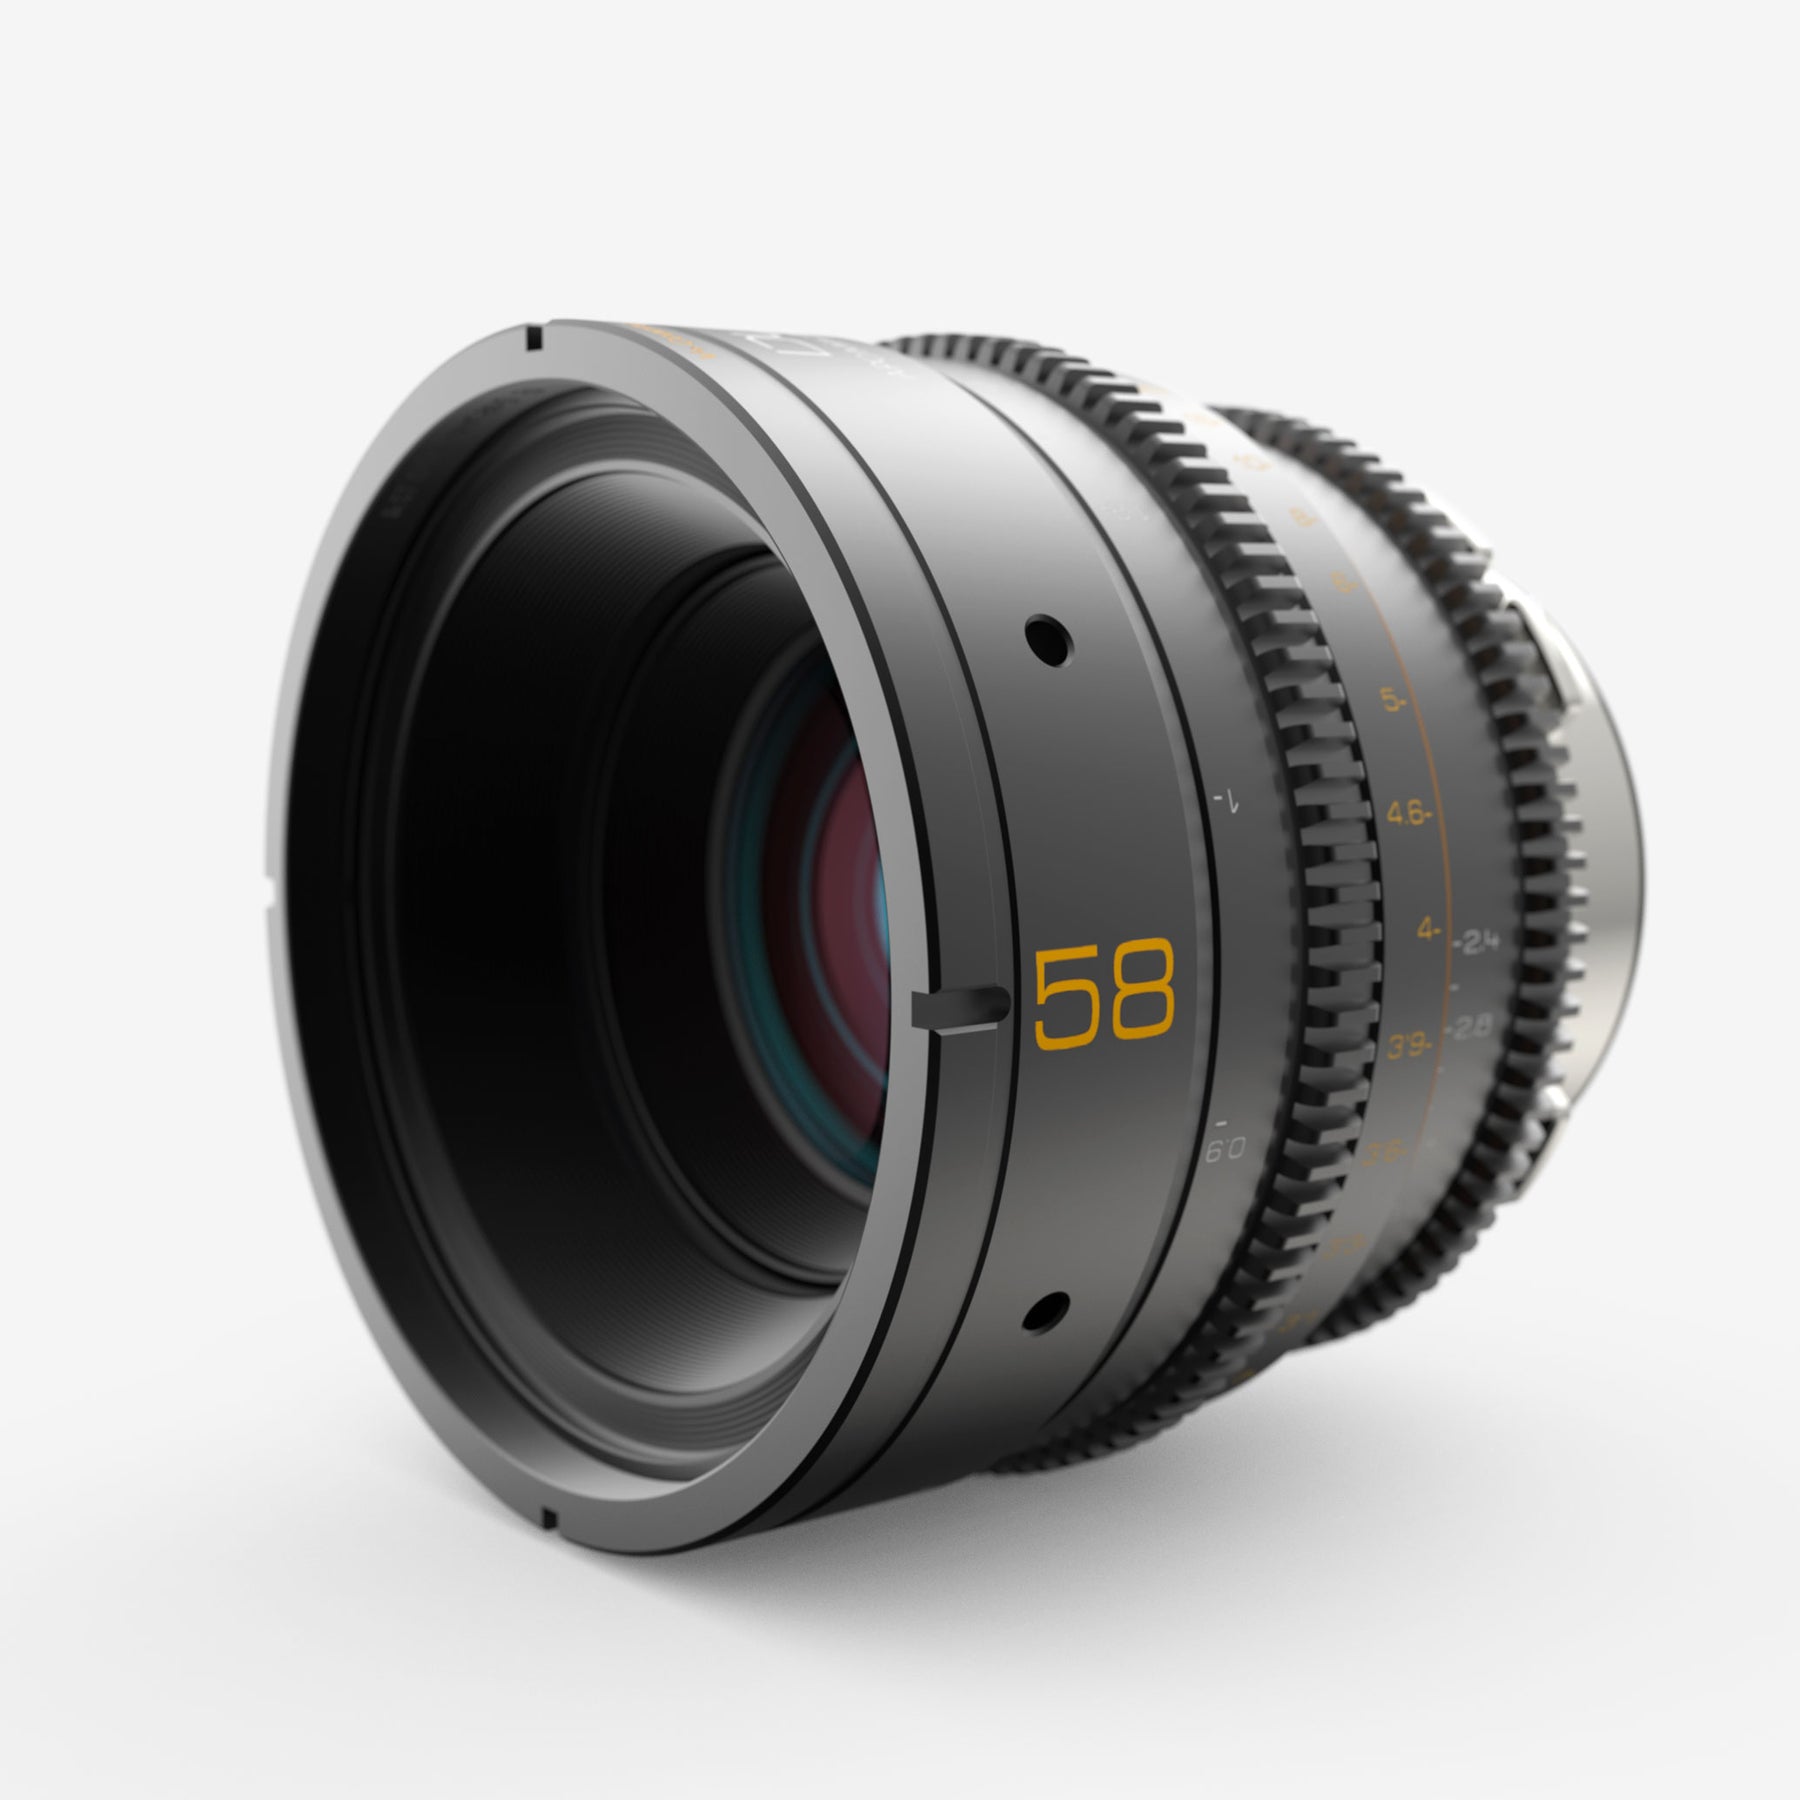 Dulens APO Mini Prime 58mm T2.4 Lens